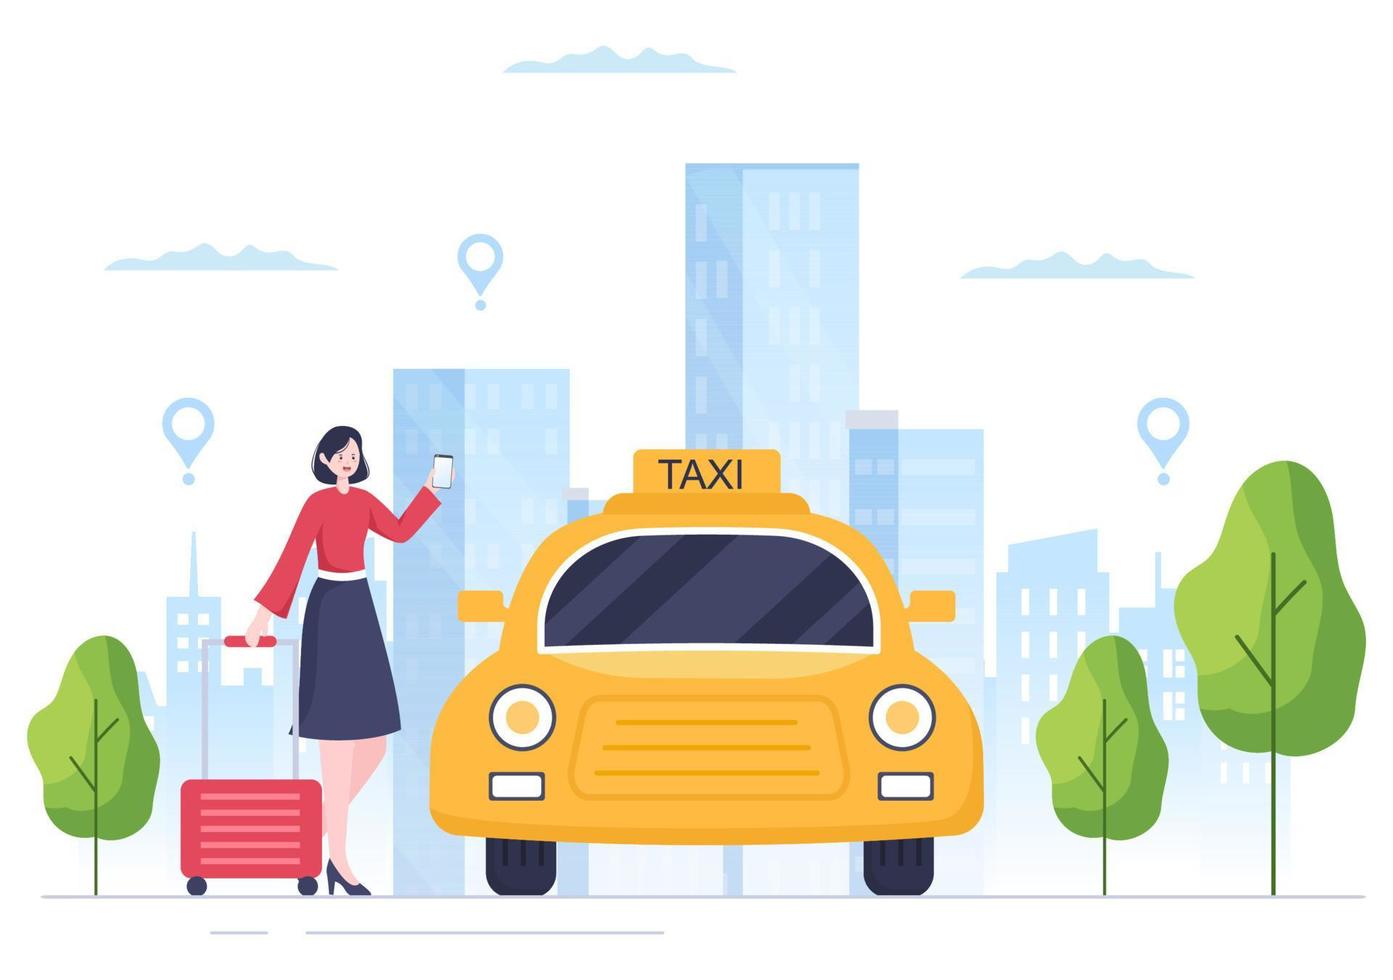 Online-Taxibuchung Reiseservice flache Designillustration über mobile App auf dem Smartphone bringen Sie jemanden zu einem Ziel, das für Hintergrund, Poster oder Banner geeignet ist vektor